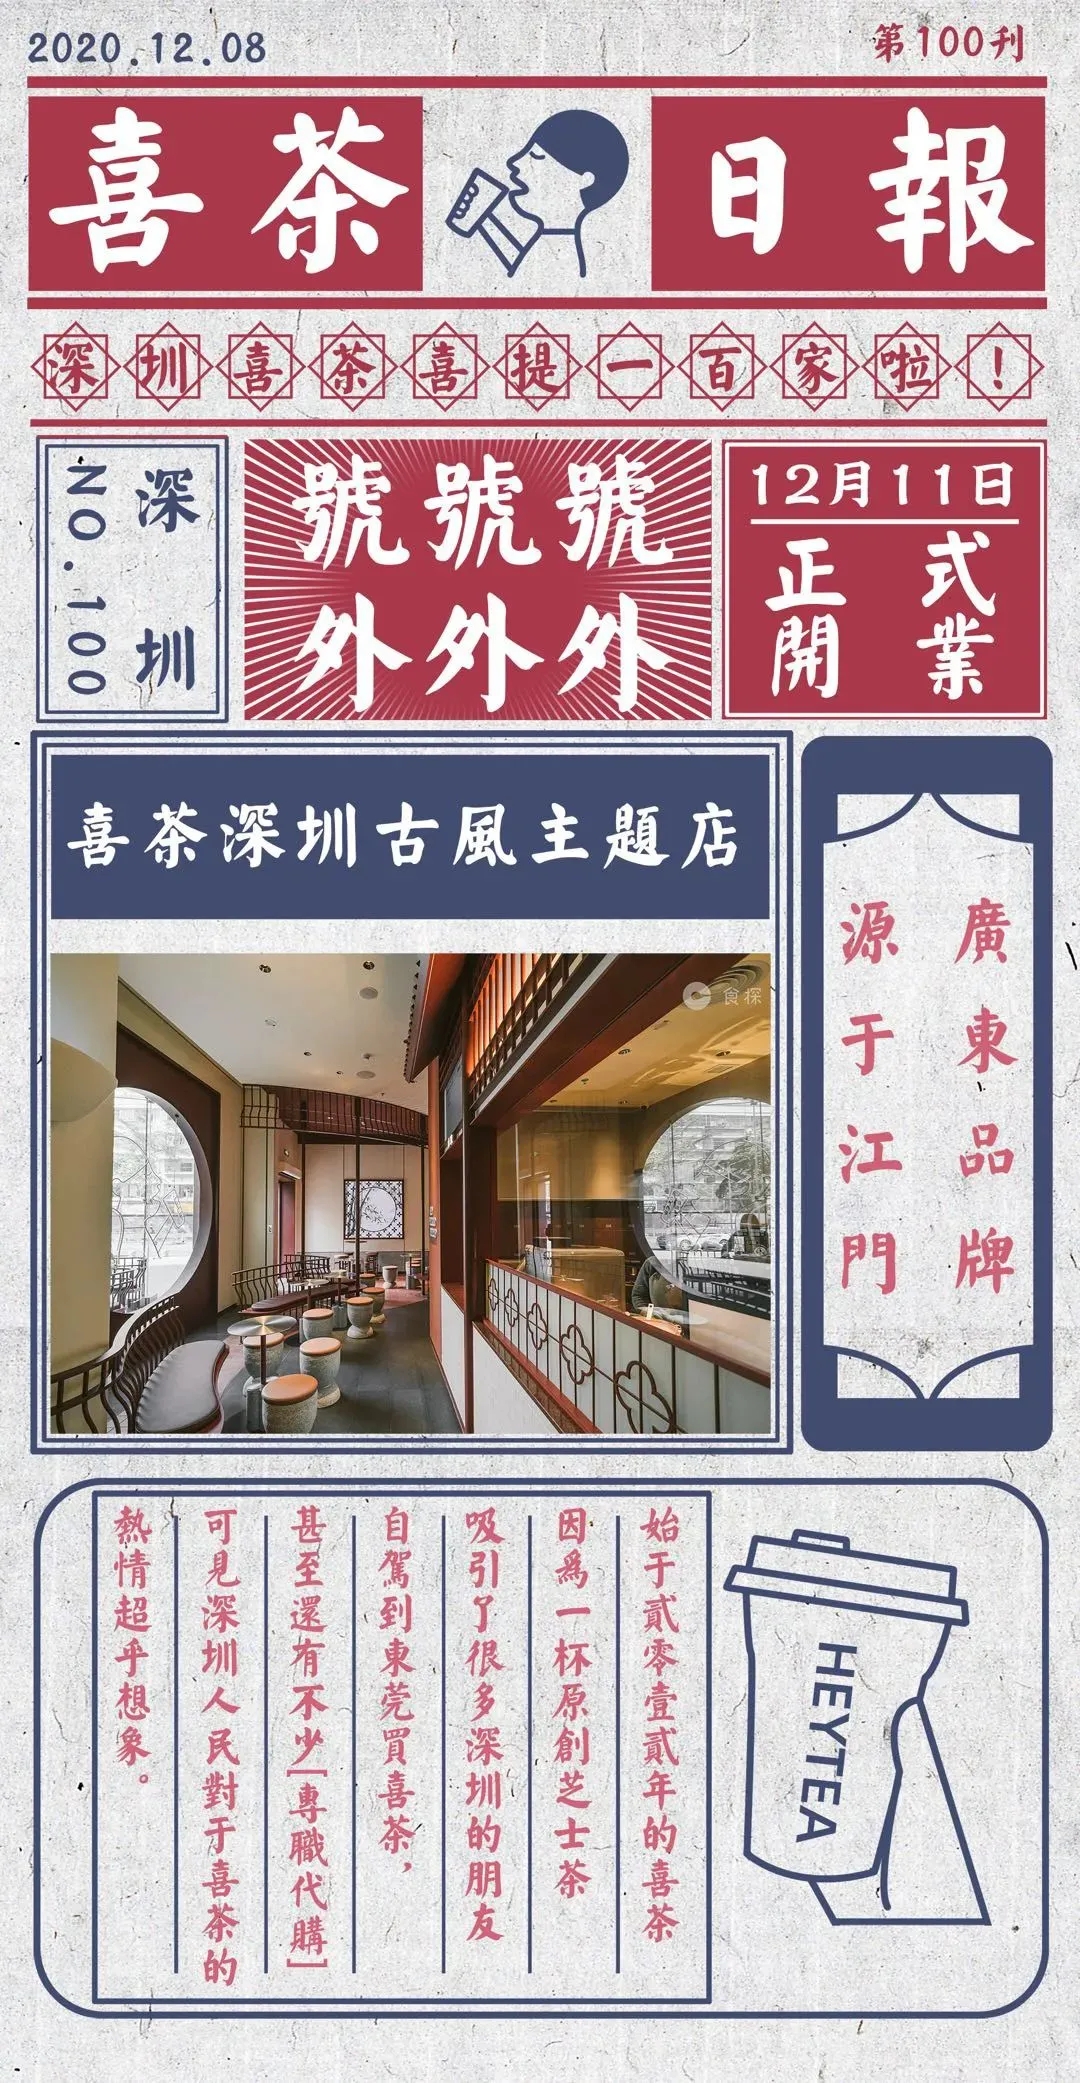 喜茶深圳第100店海报设计